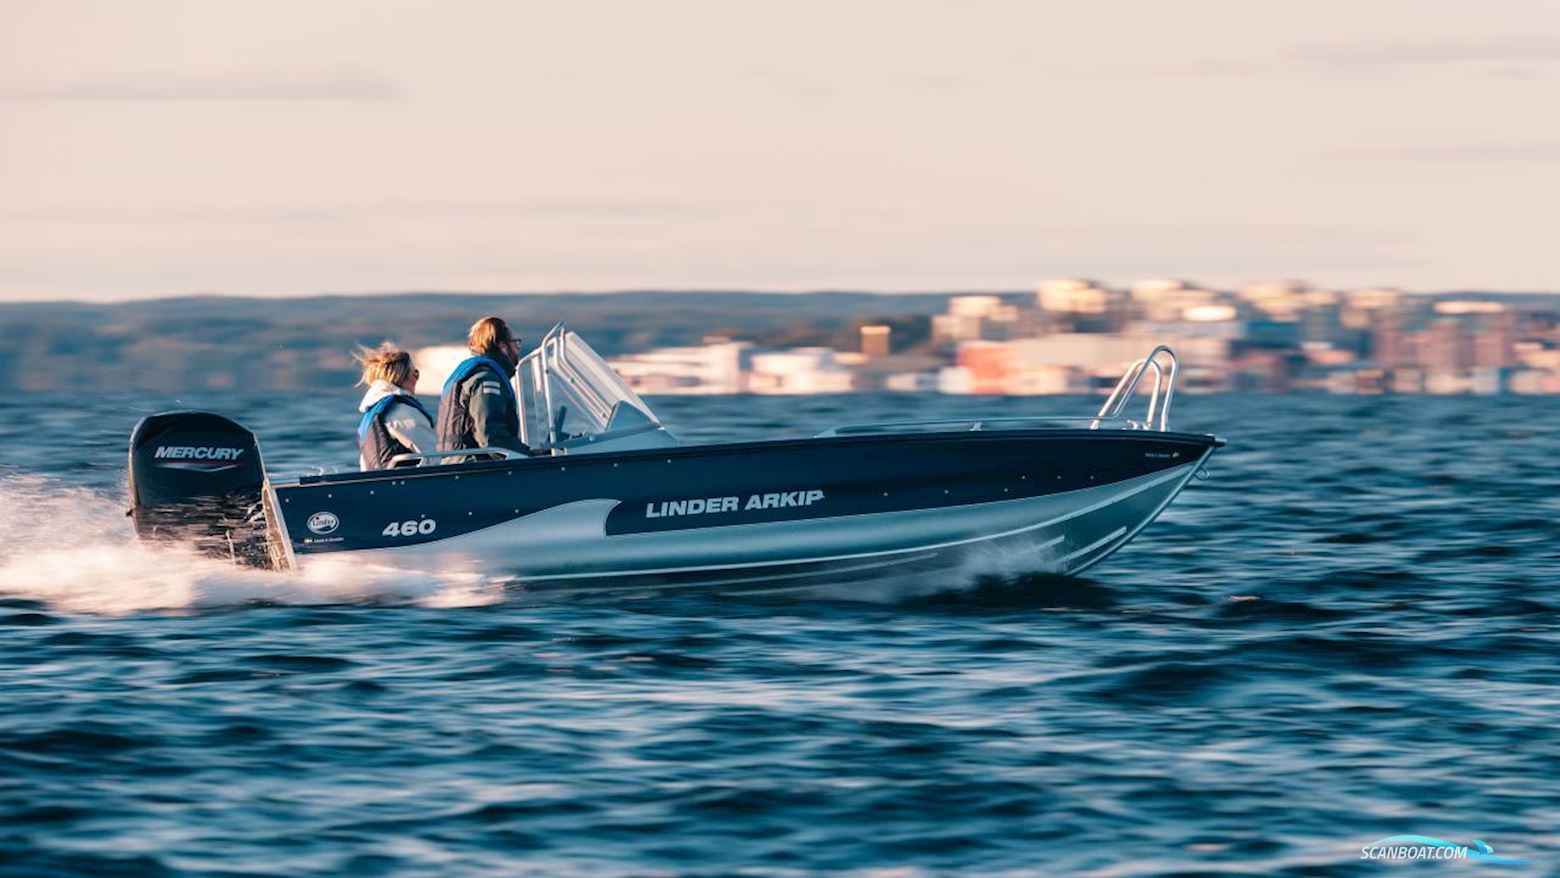 Linder Arkip 460 Motor boat 2022, with Mercury engine, Sweden